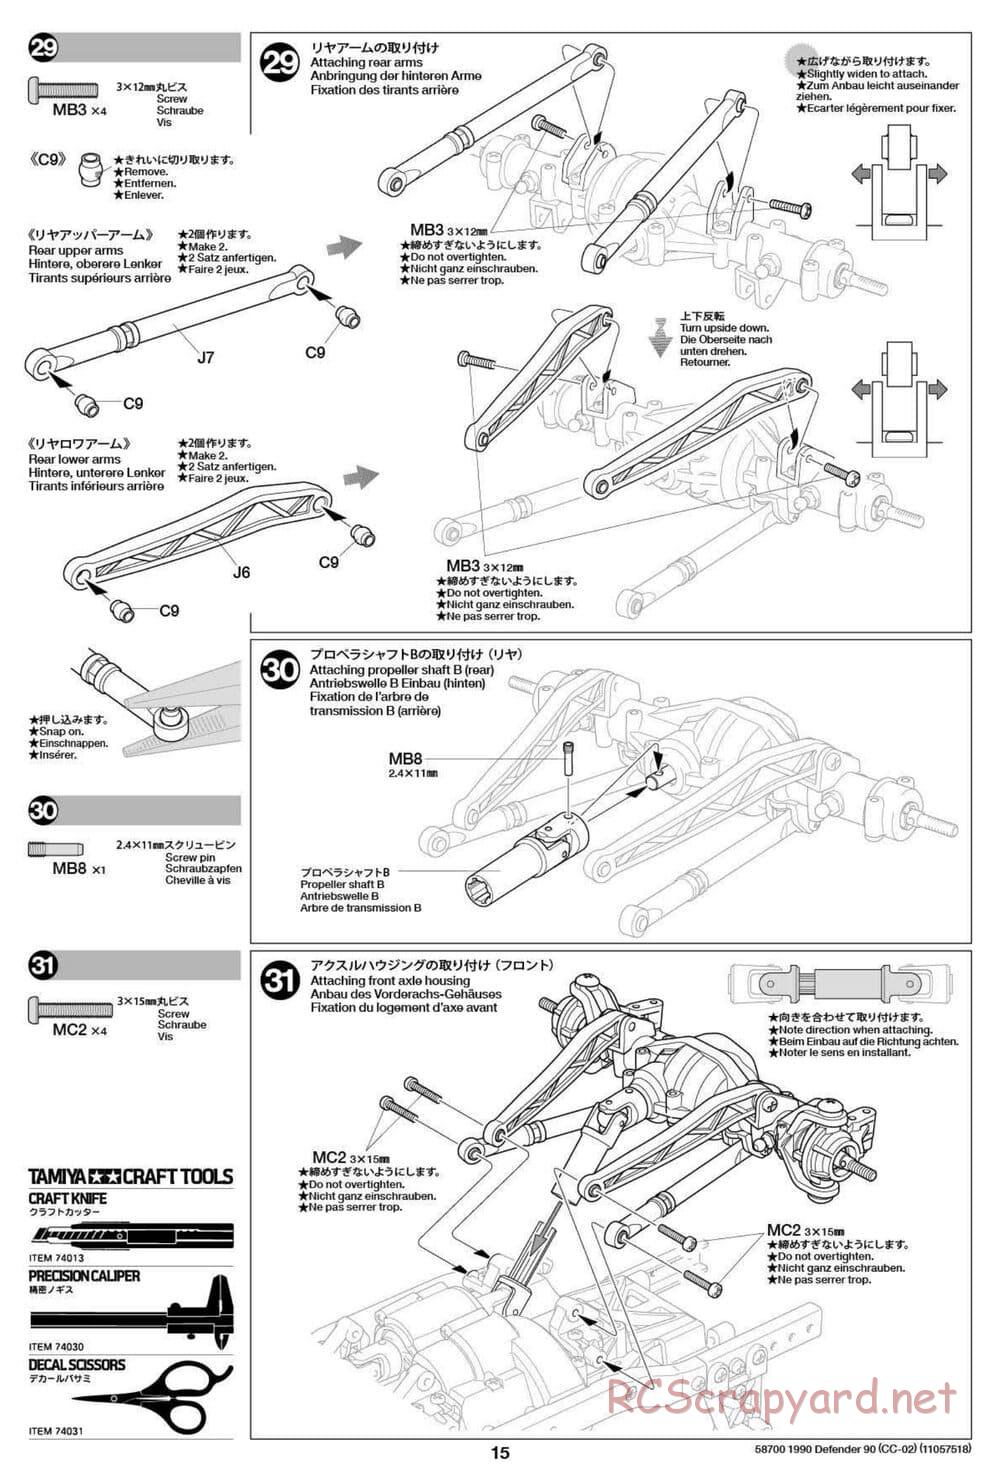 Tamiya - 1990 Land Rover Defender 90 - CC-02 Chassis - Manual - Page 15